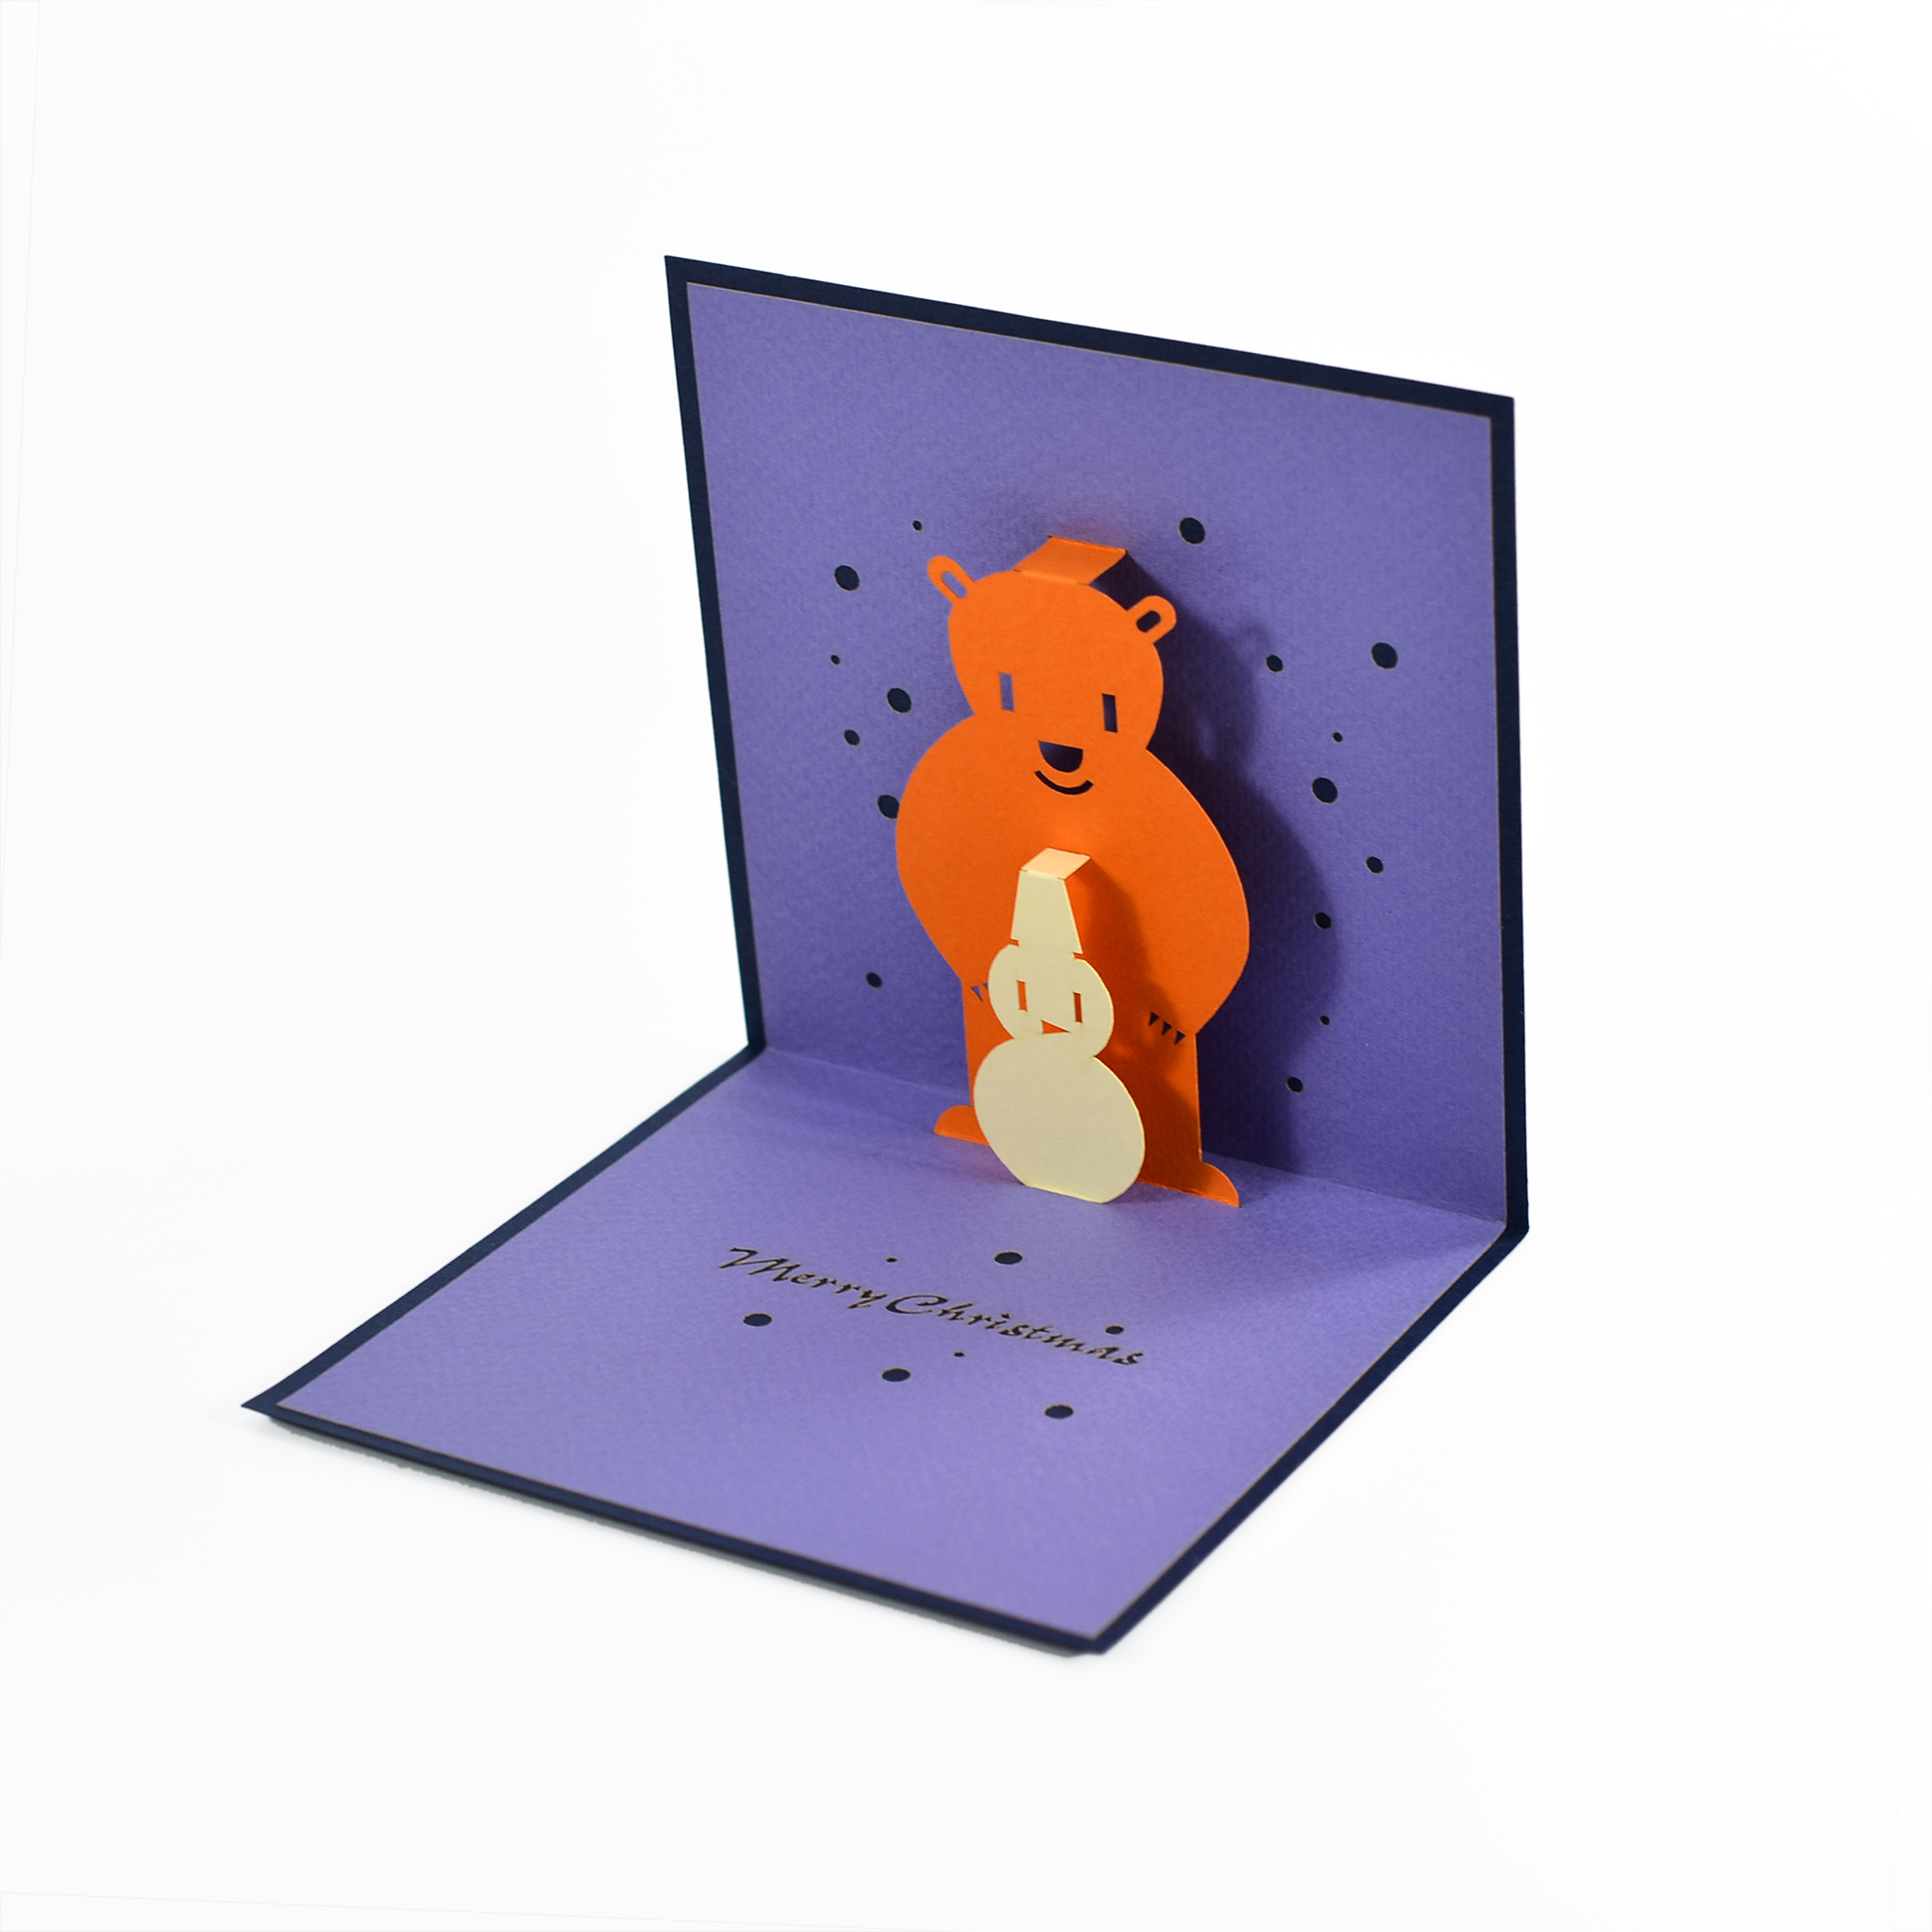 Thiệp nổi 3D handmade Merry Christmas - Chú gấu cùng người tuyết CN041